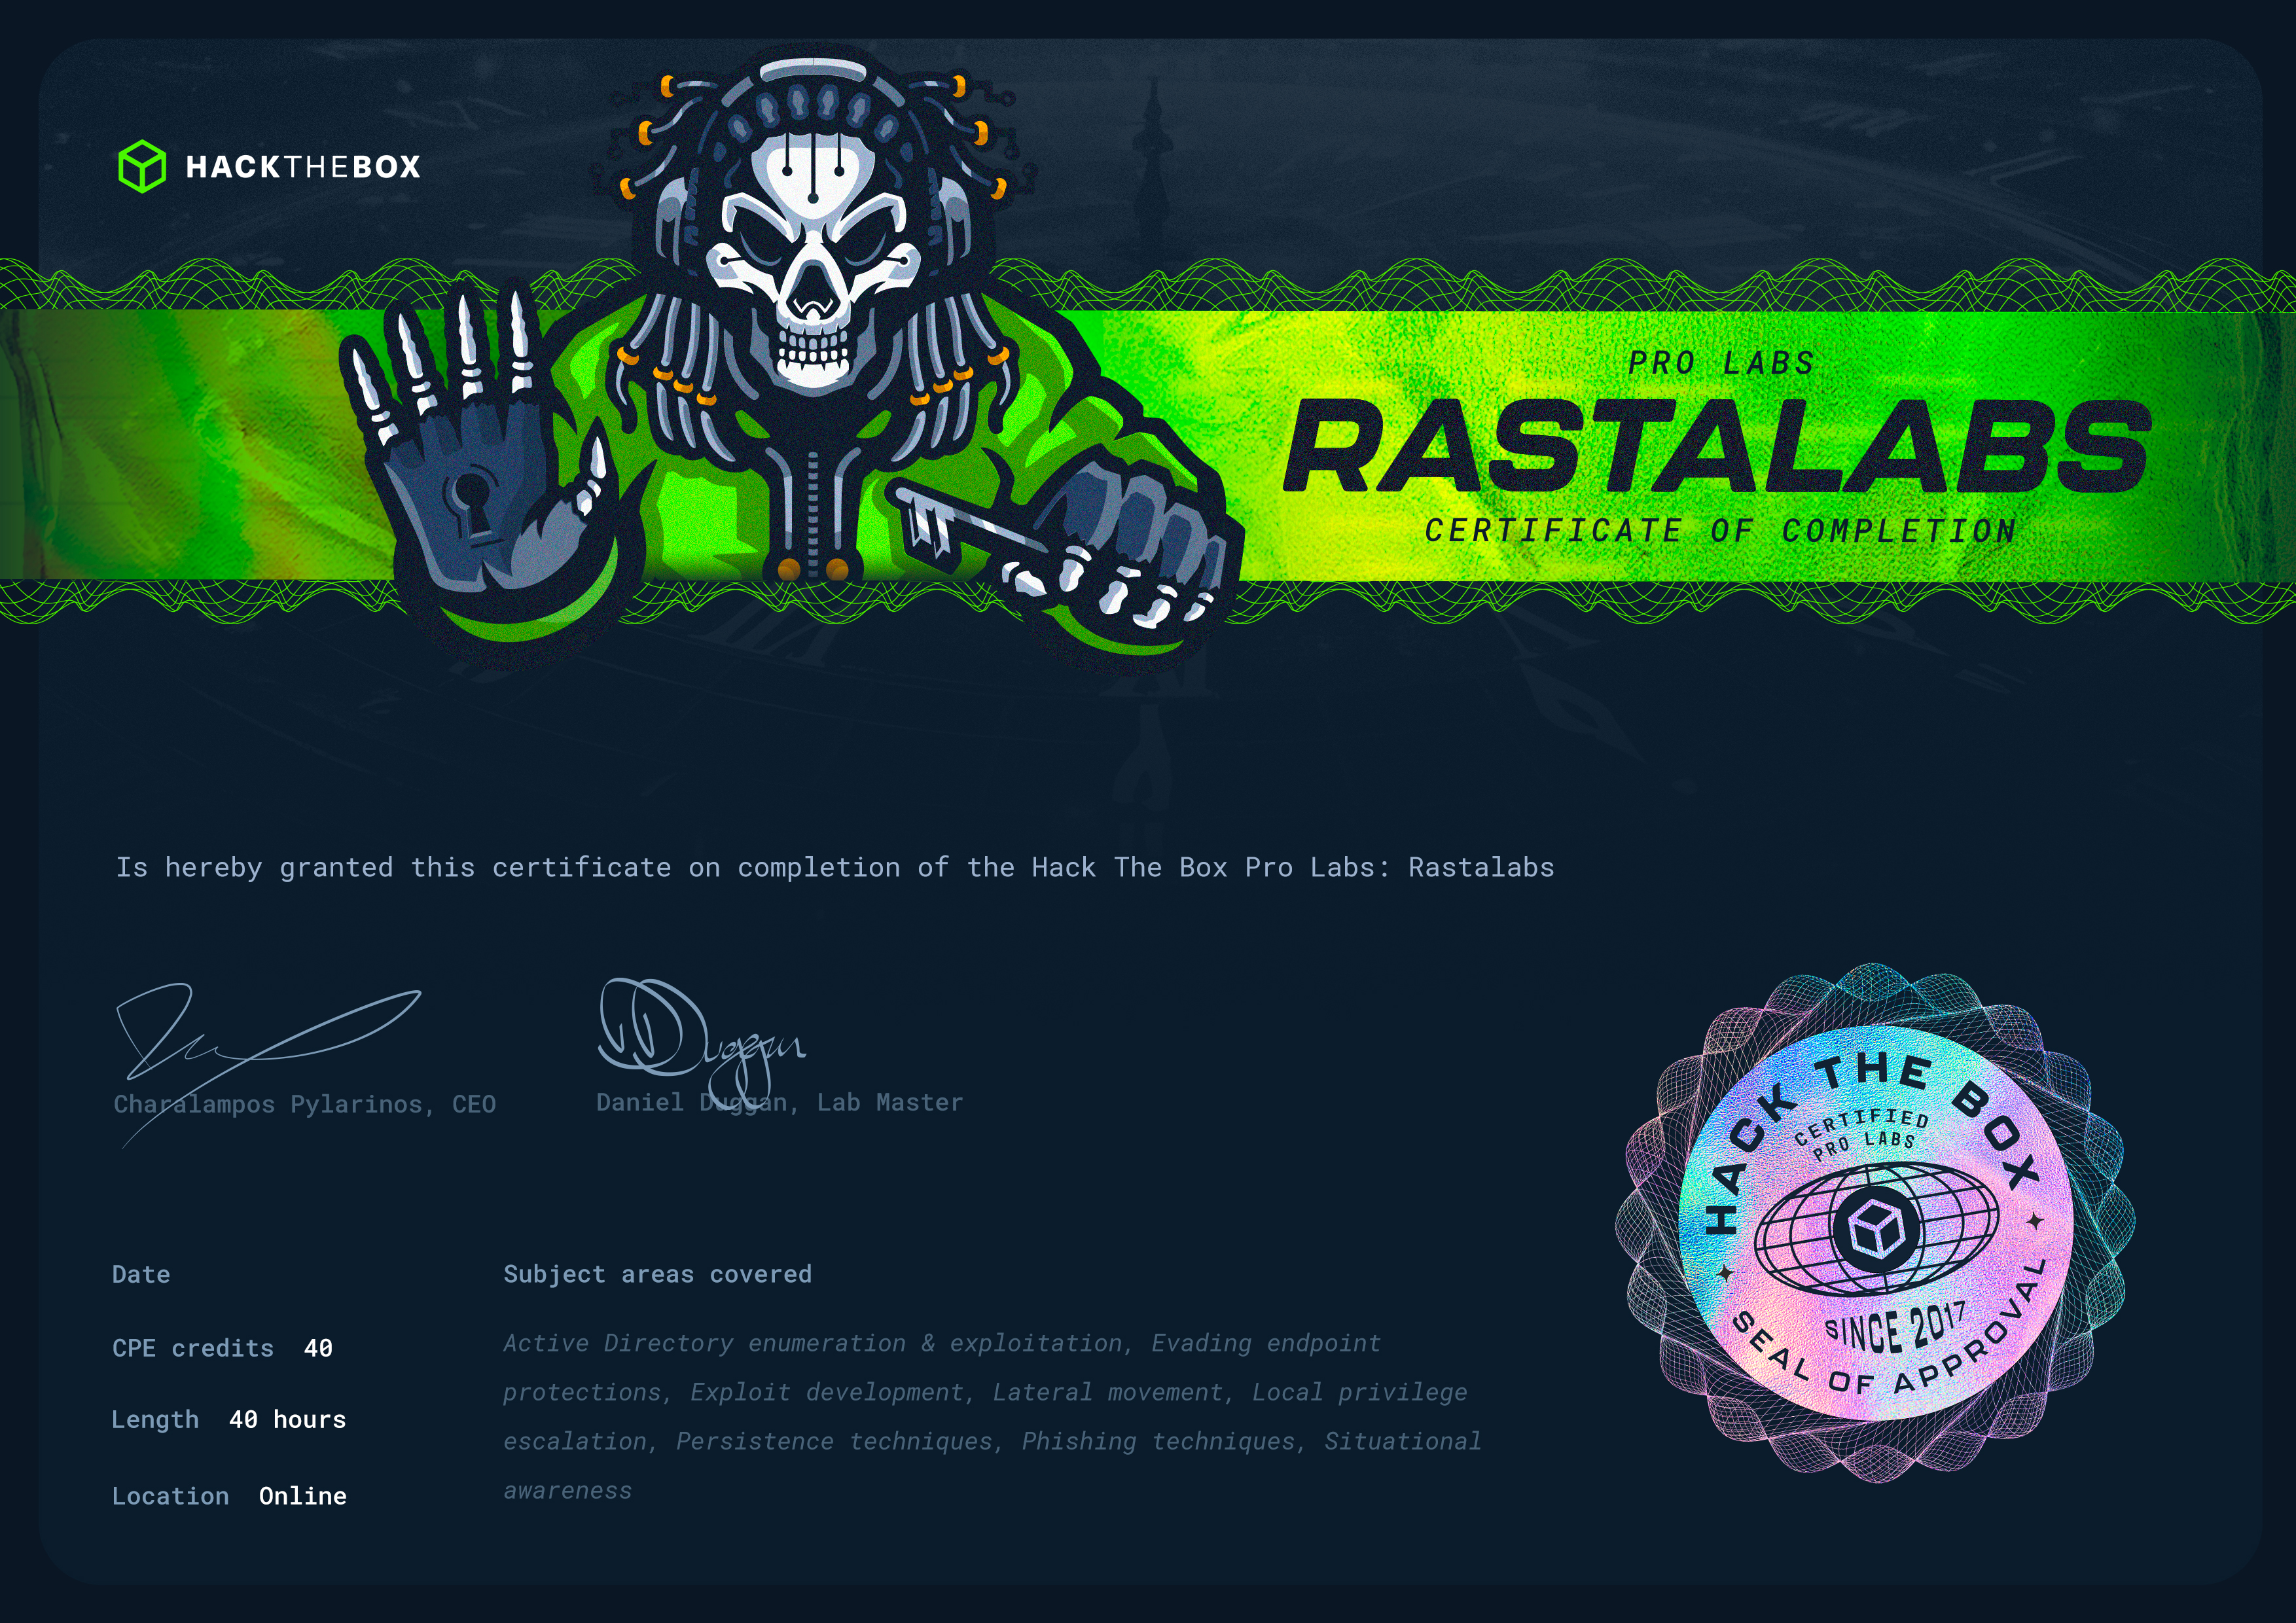 Rastalabs Certificate